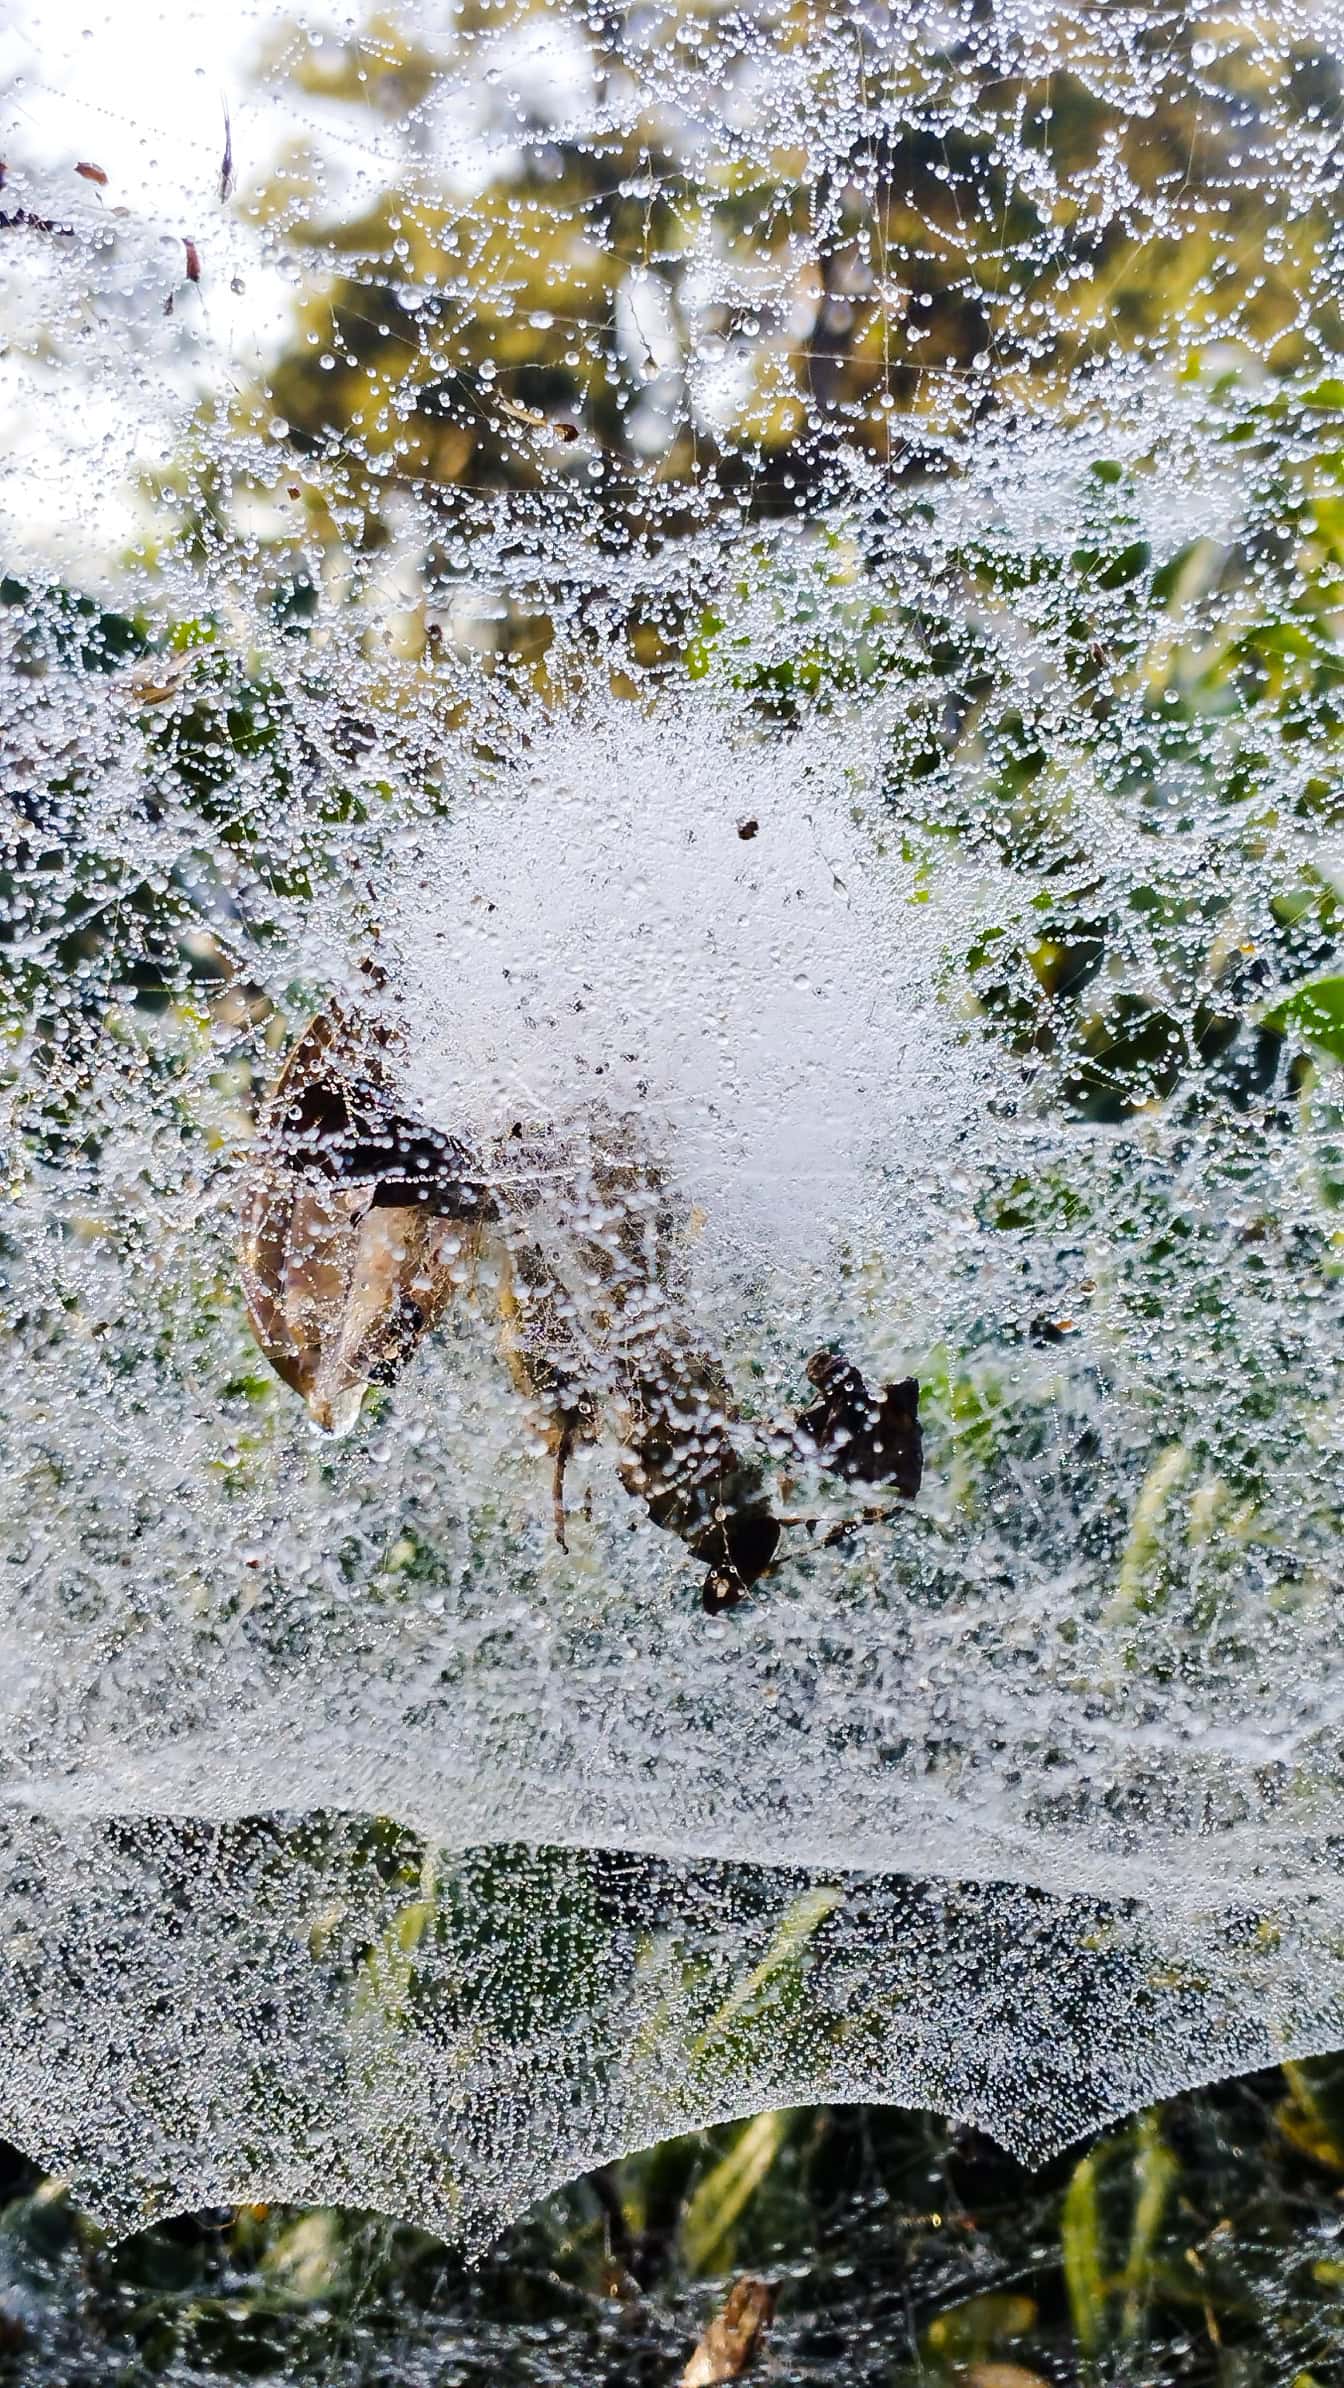 Primer plano de una tela de araña con pequeñas gotas de agua